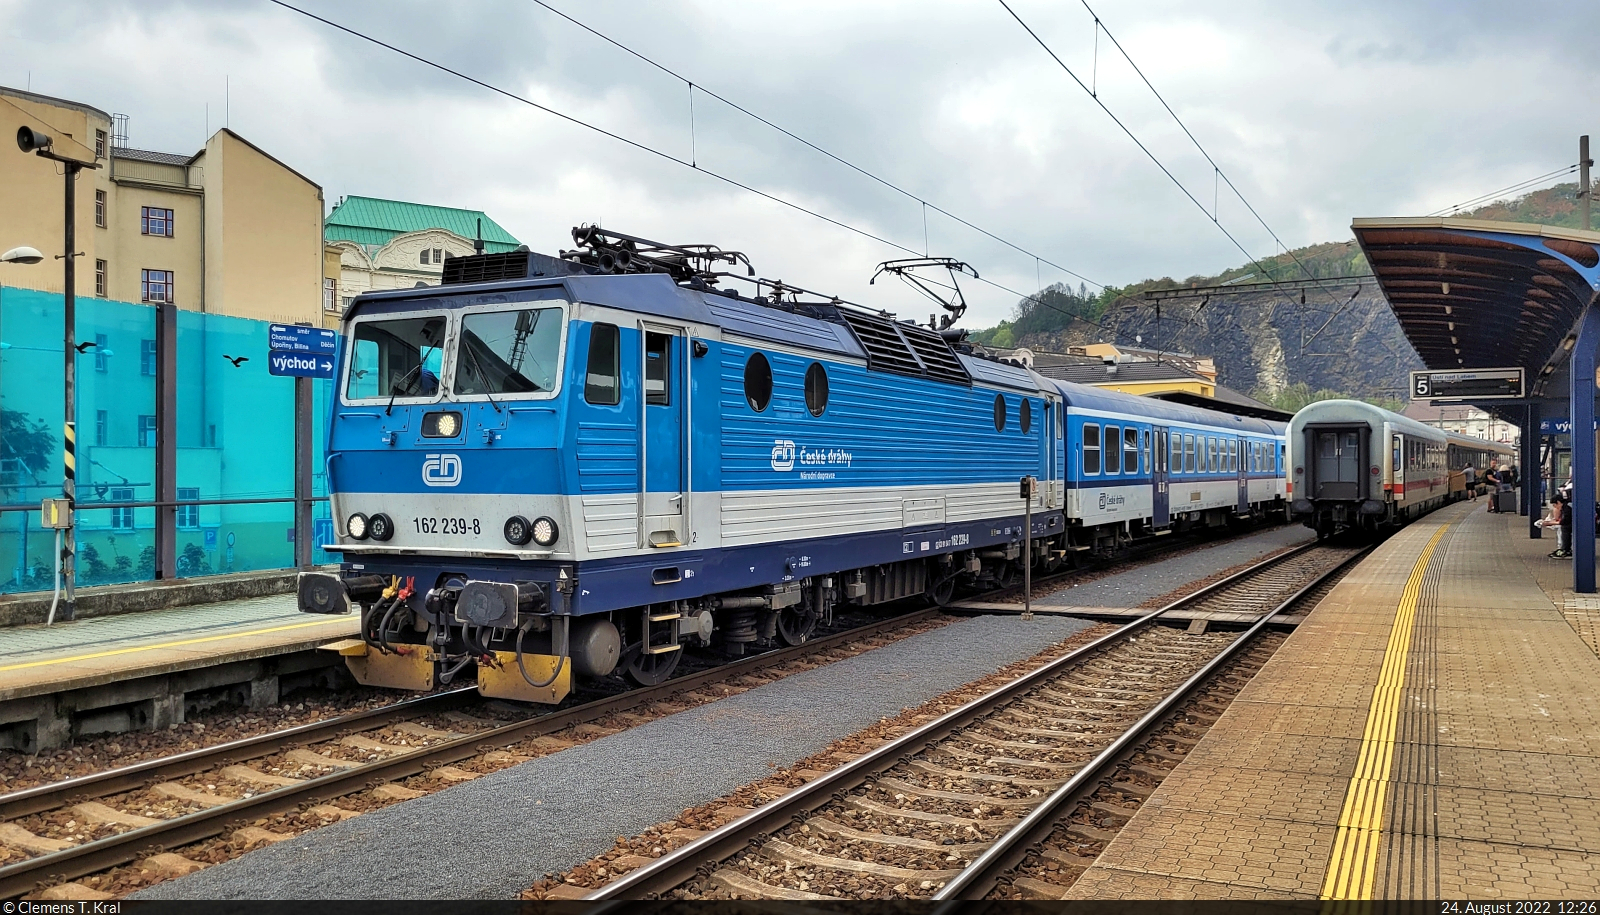 162 239-8 beginnt ihre Regionalzug-Fahrt im Bahnhof Ústí nad Labem hl.n. (CZ) auf Gleis 7.

🧰 ČD
🚝 Os 6866 Ústí nad Labem hl.n. (CZ)–Litvínov (CZ)
🕓 24.8.2022 | 12:26 Uhr